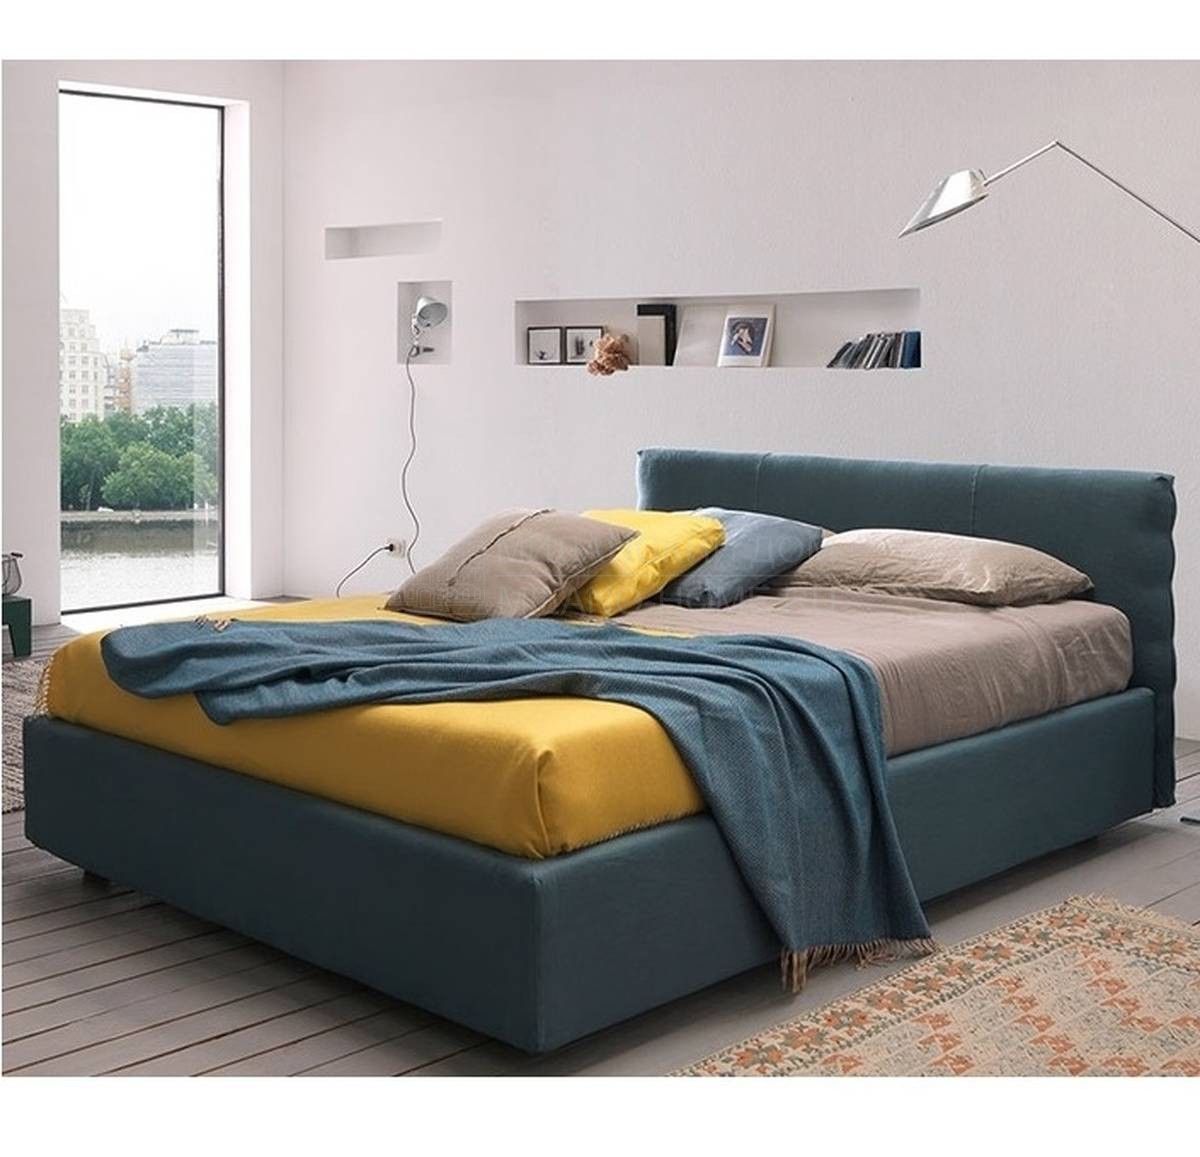 Кровать с мягким изголовьем Sun из Италии фабрики BOLZAN